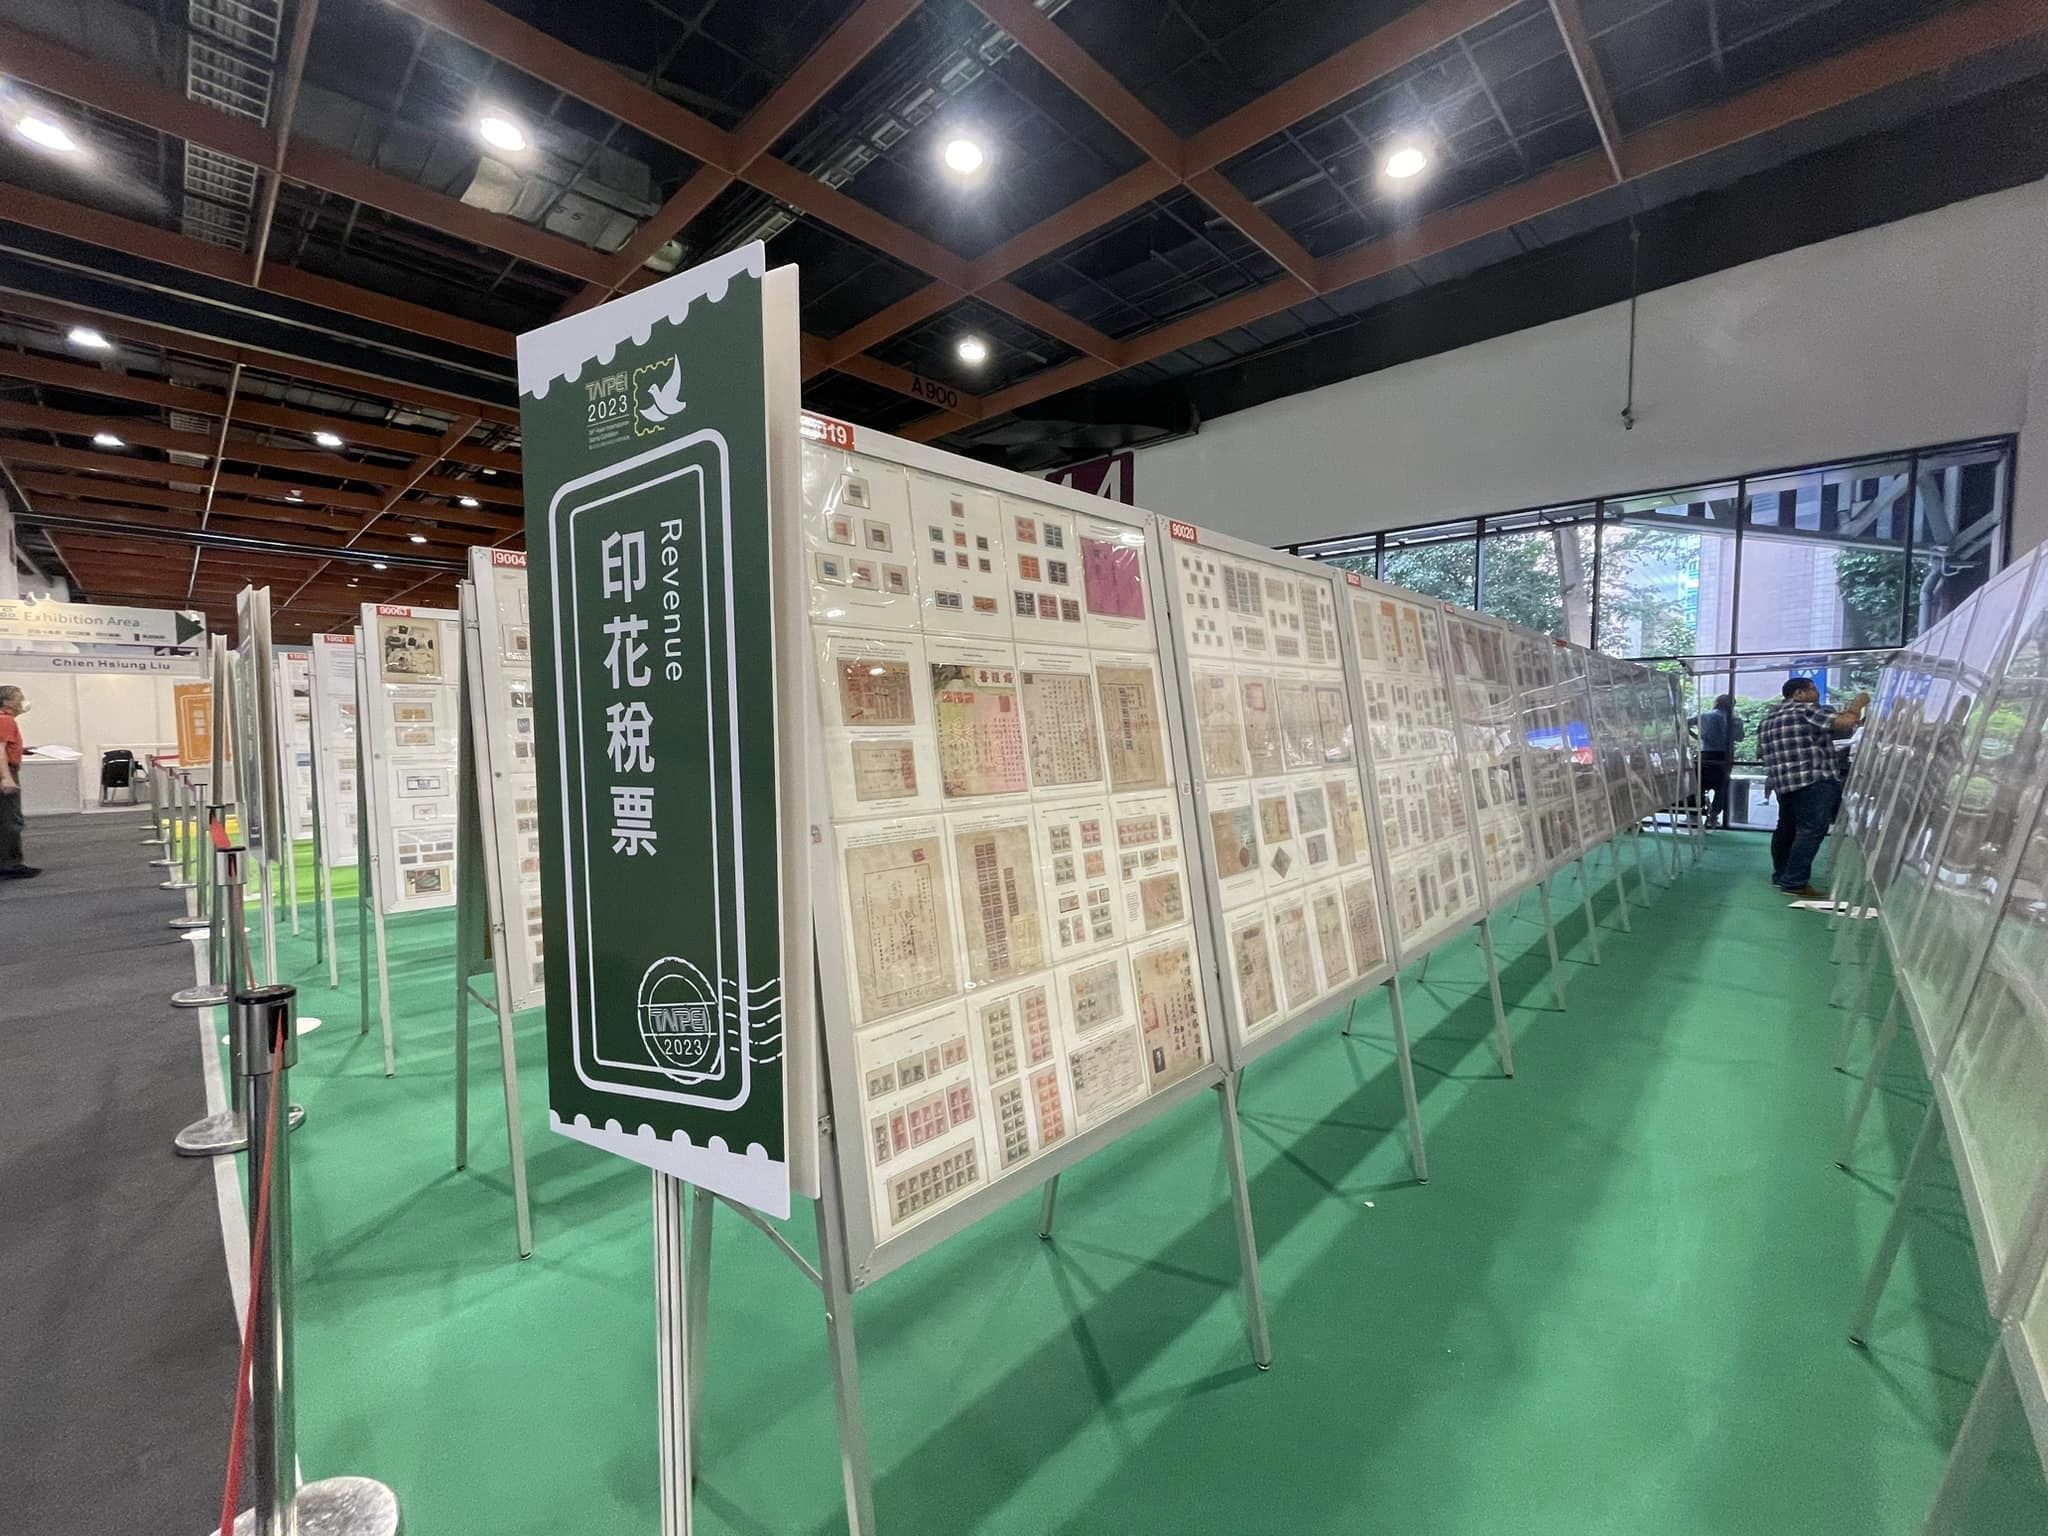 "Triển lãm tem thư quốc tế châu Á Đài Bắc lần thứ 39" kéo dài trong 5 ngày đã chính thức khép lại. (Ảnh: Bưu chính Trung Hoa)